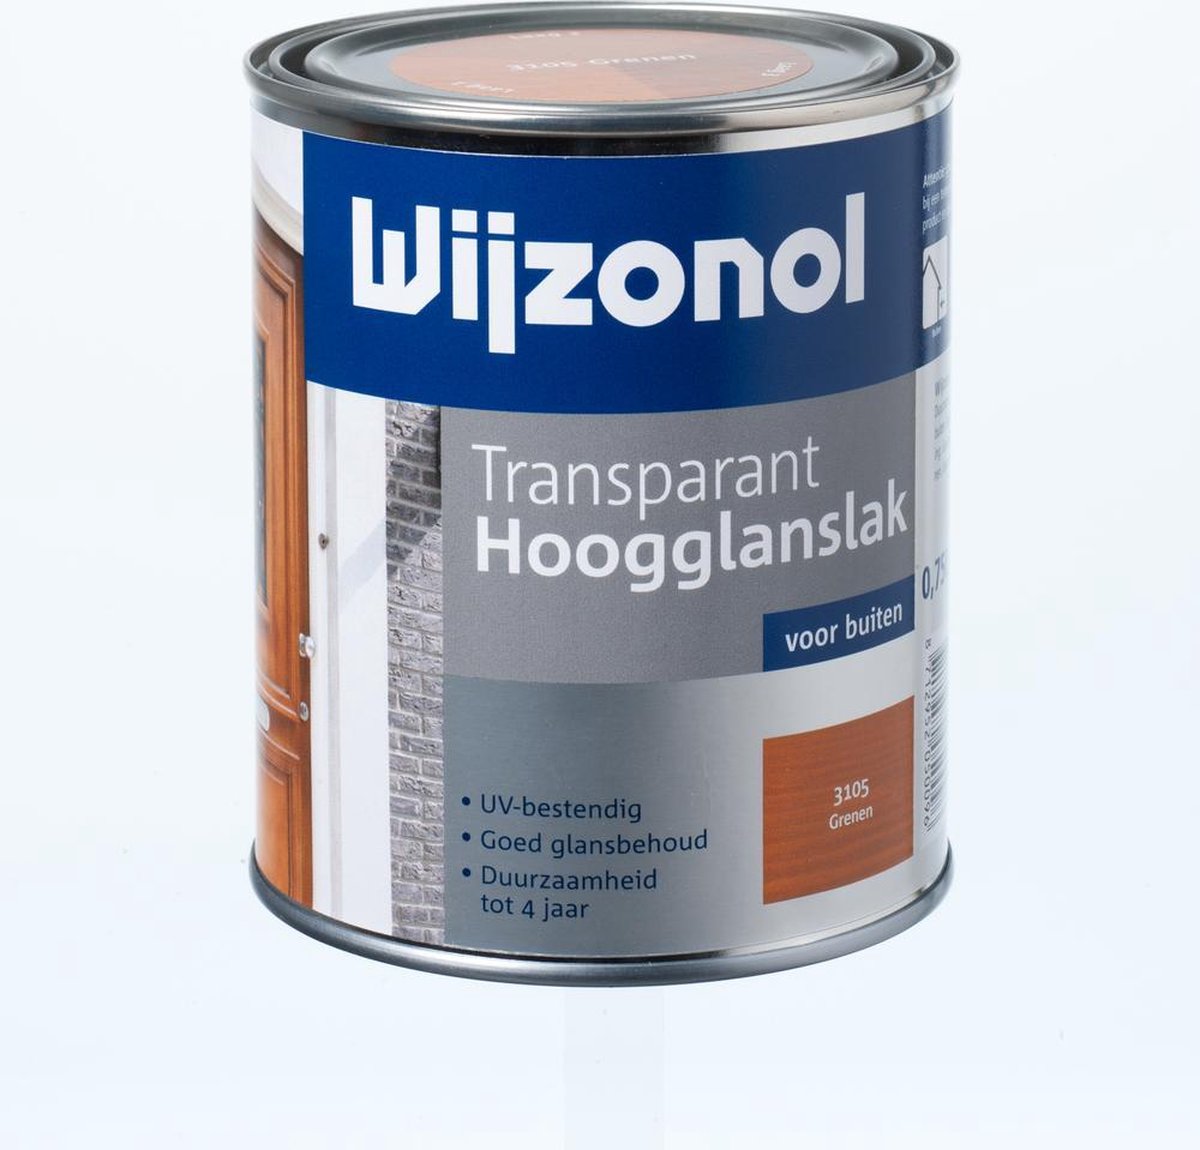 Plons In hoeveelheid Voor type Wijzonol Transparant Hoogglanslak - 0,75l - 3115 - Kastanje | bol.com